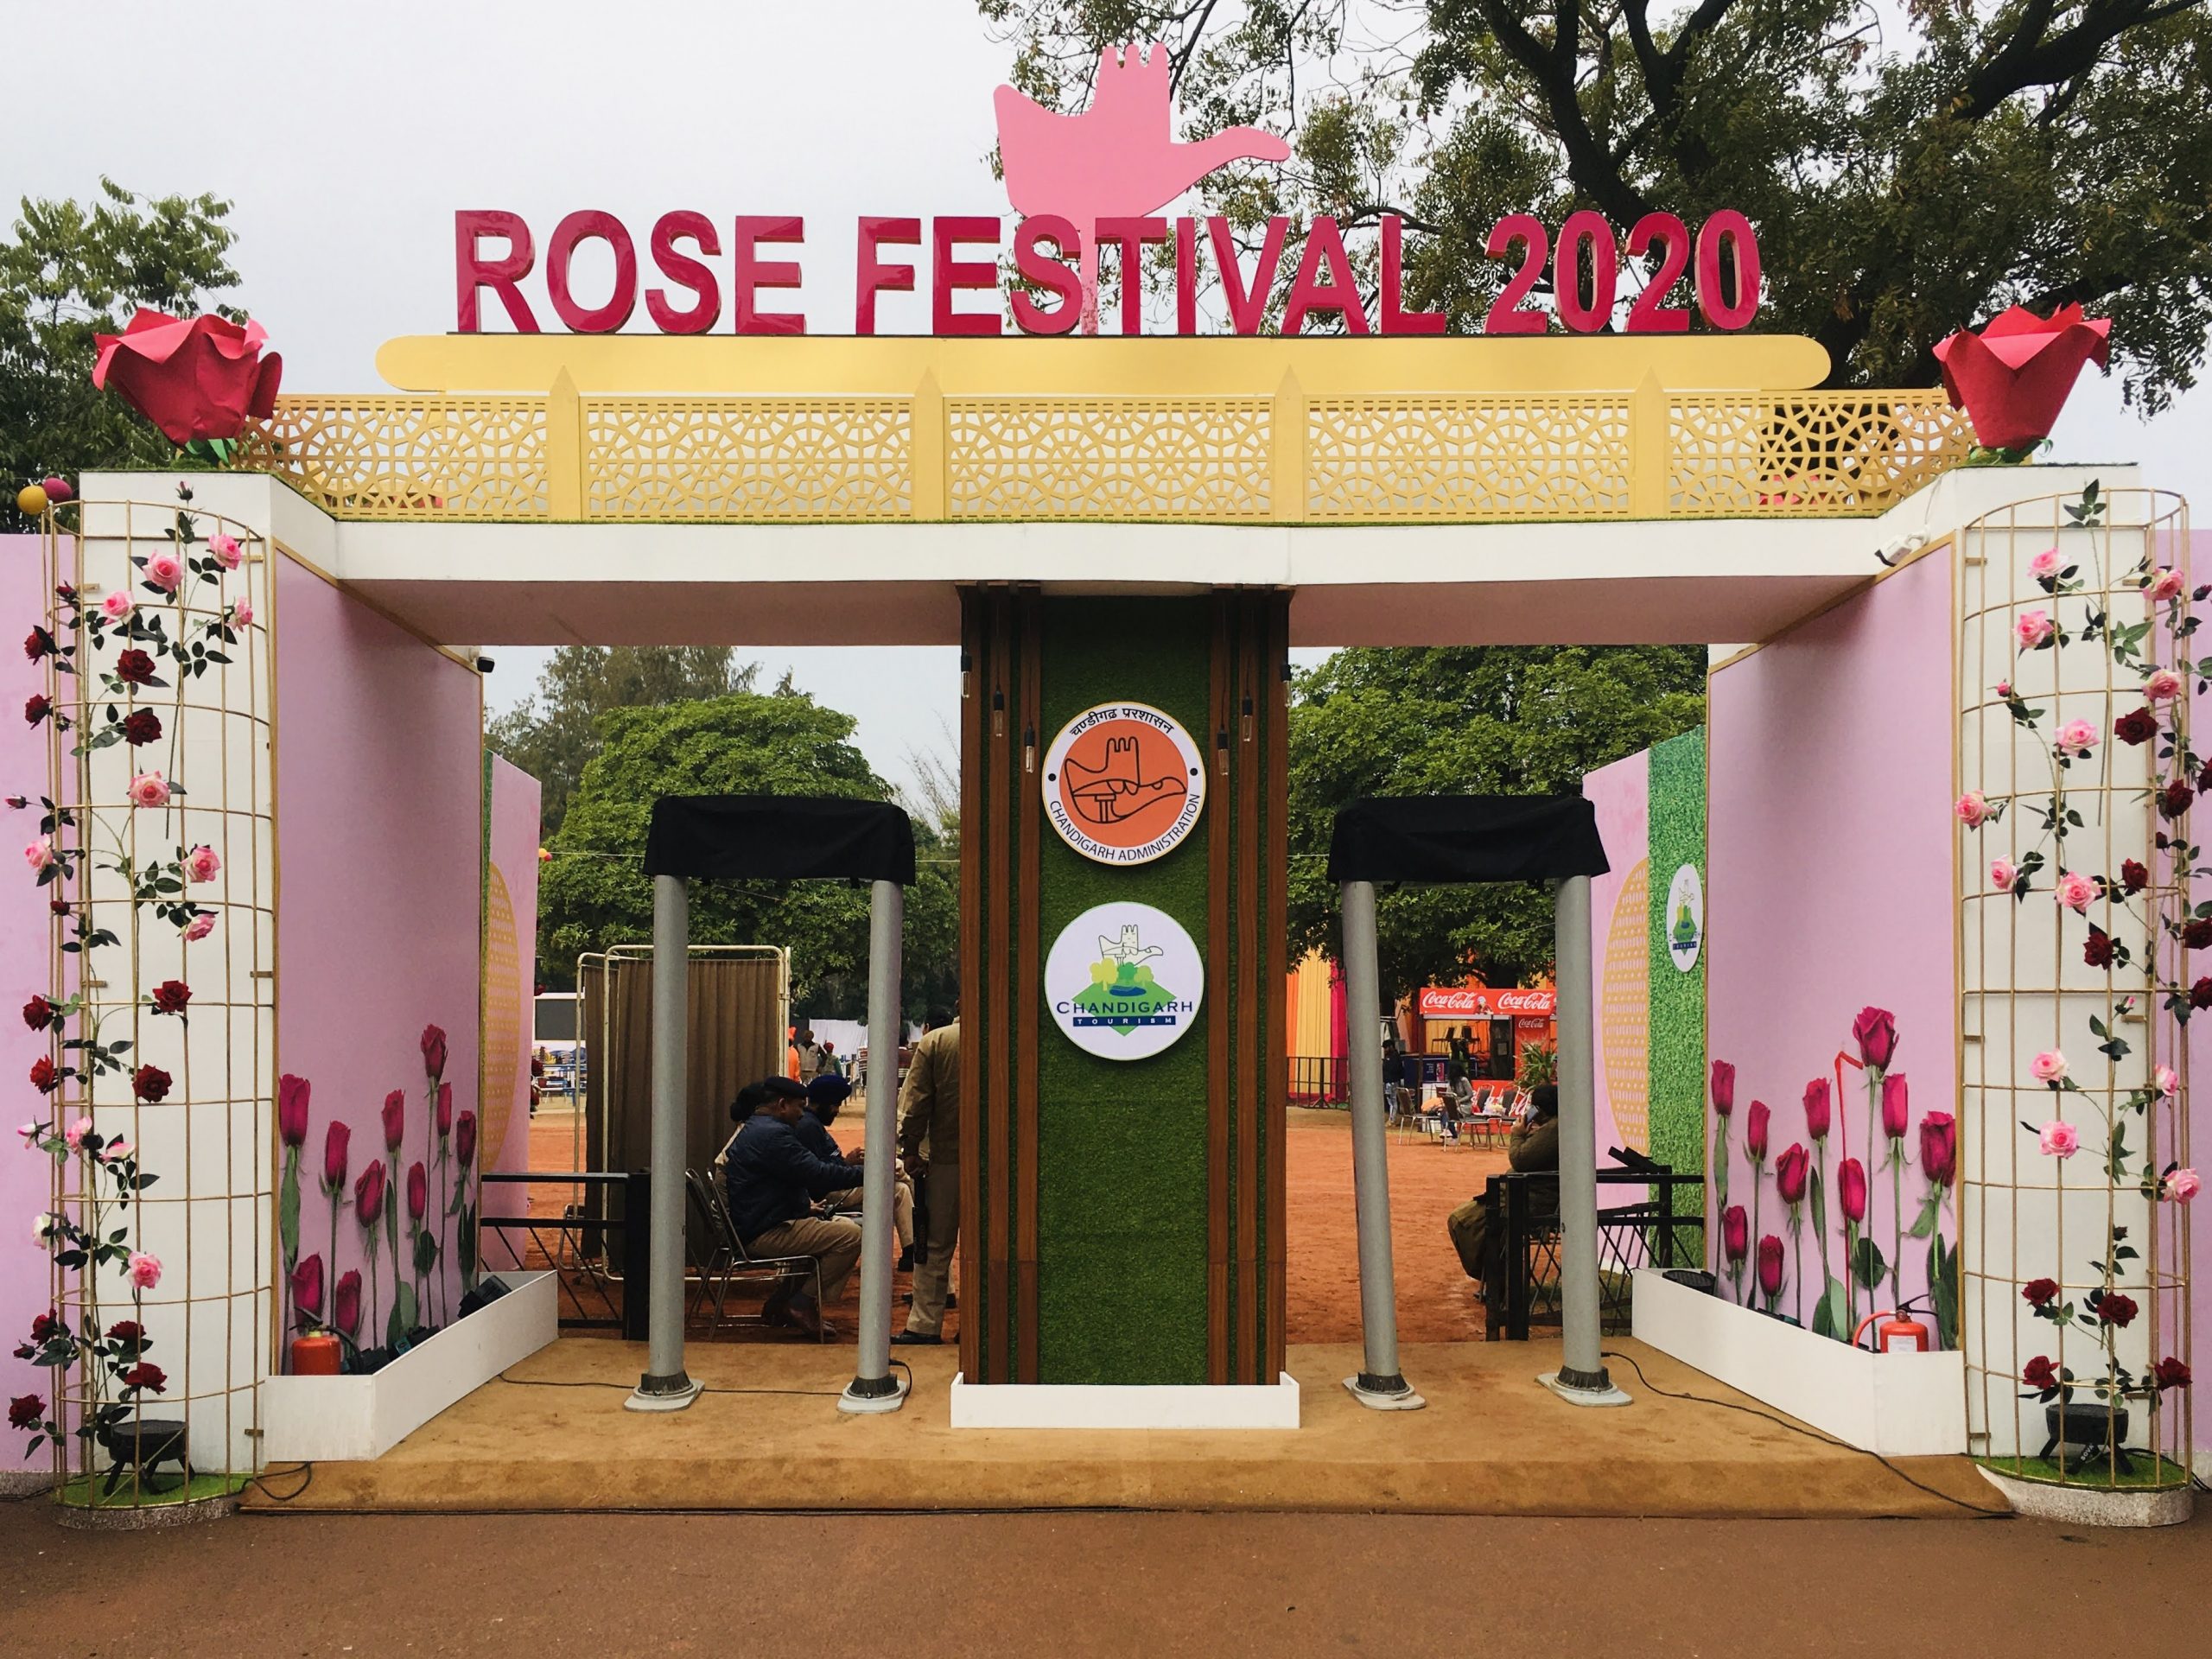 Rose festival